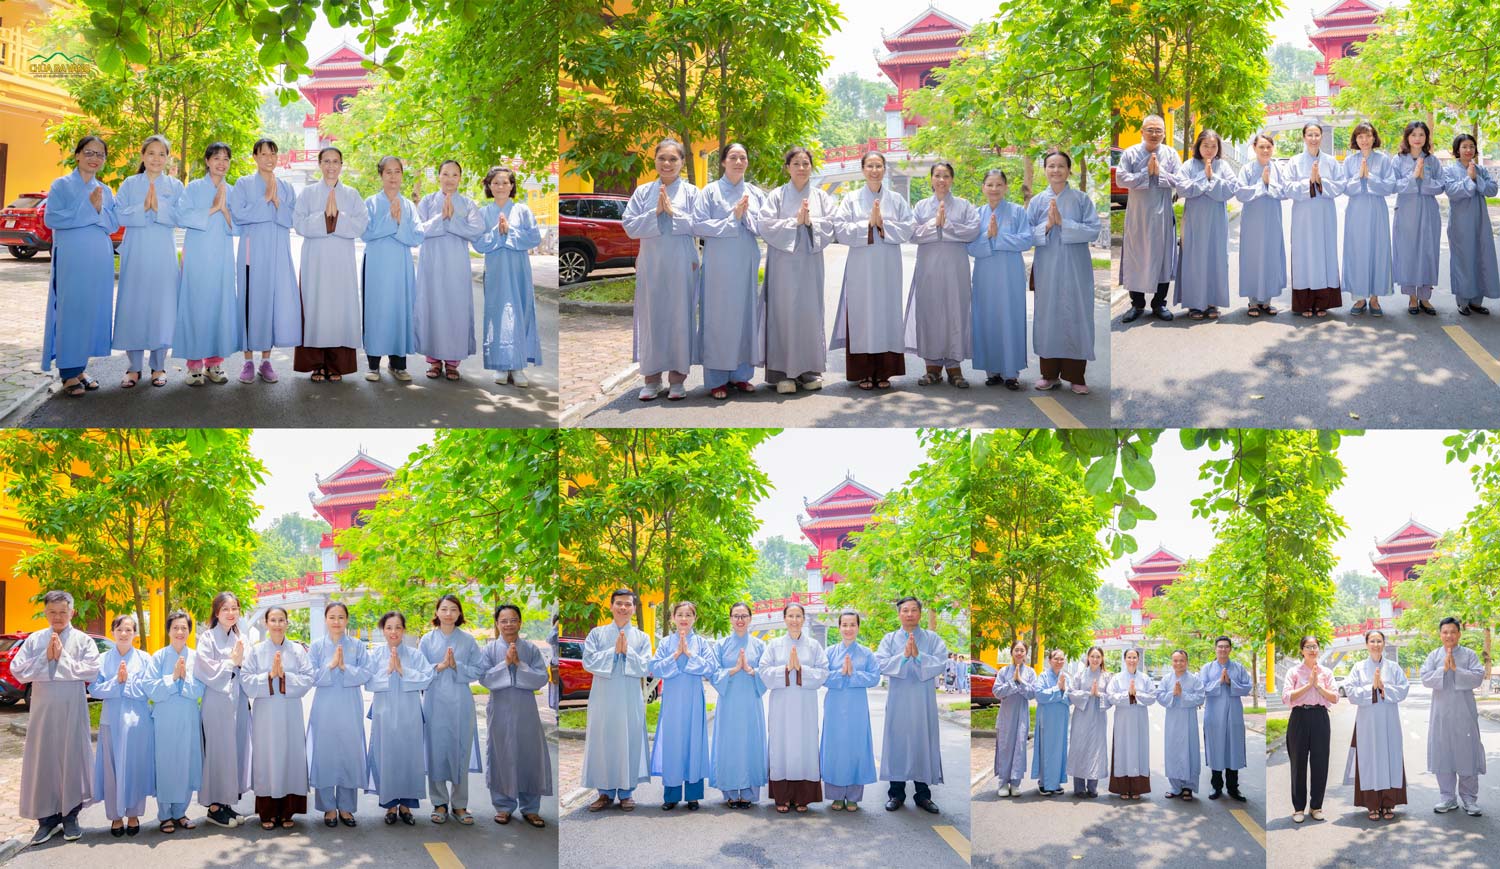 Kết thúc chuyến phận sự tại Học viện Phật giáo Việt Nam - Sóc Sơn, Hà Nội, các Phật tử đã được chụp cùng Cô chủ nhiệm bức hình lưu niệm